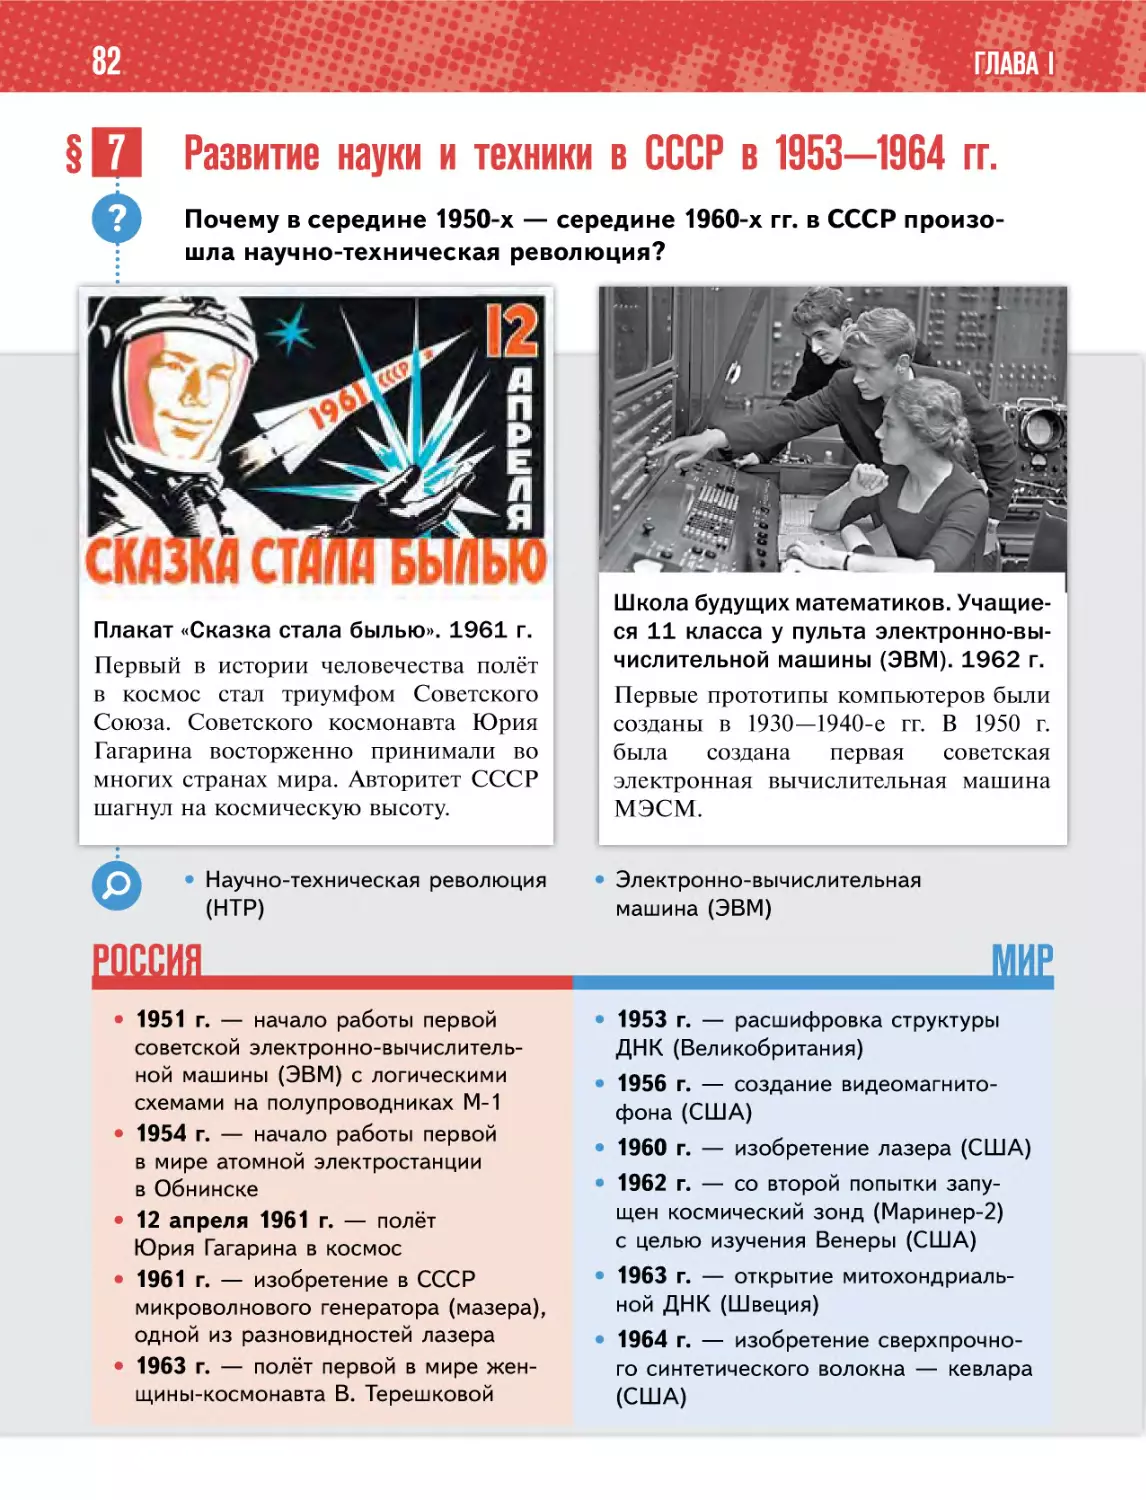 § 7 Развитие науки и техники в СССР в 1953—1964 гг.